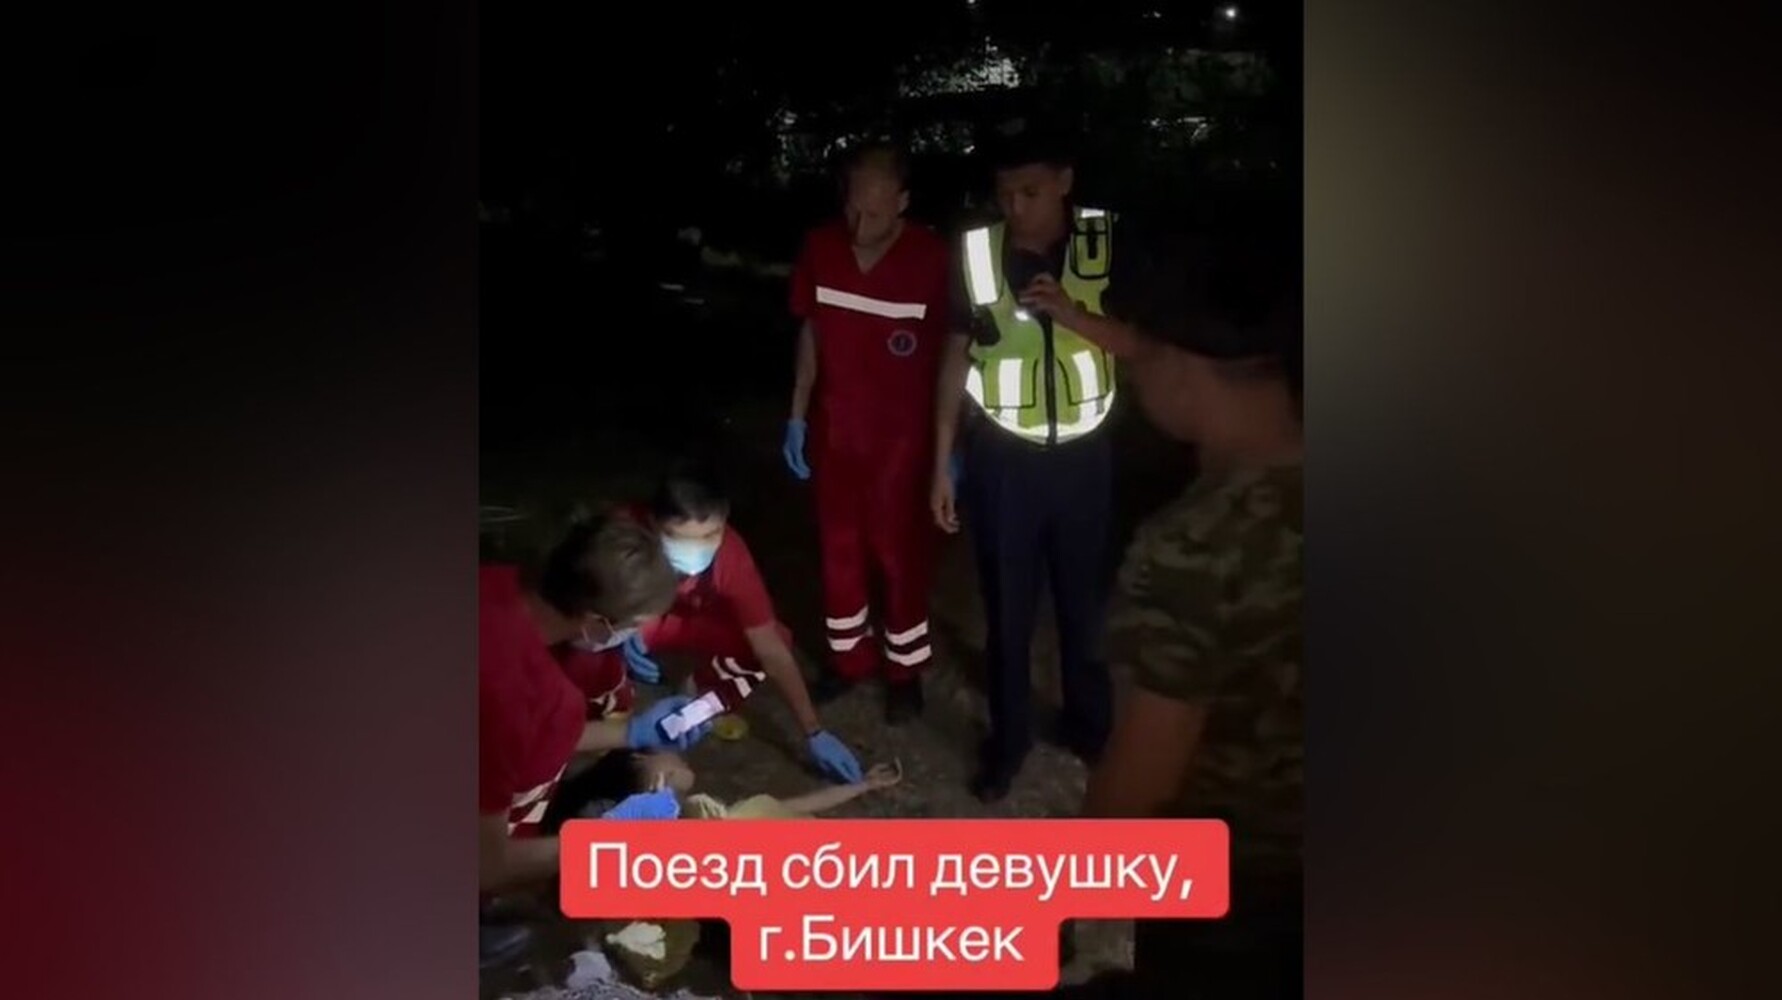 В Бишкеке поезд сбил девушку. Она умерла — Today.kg